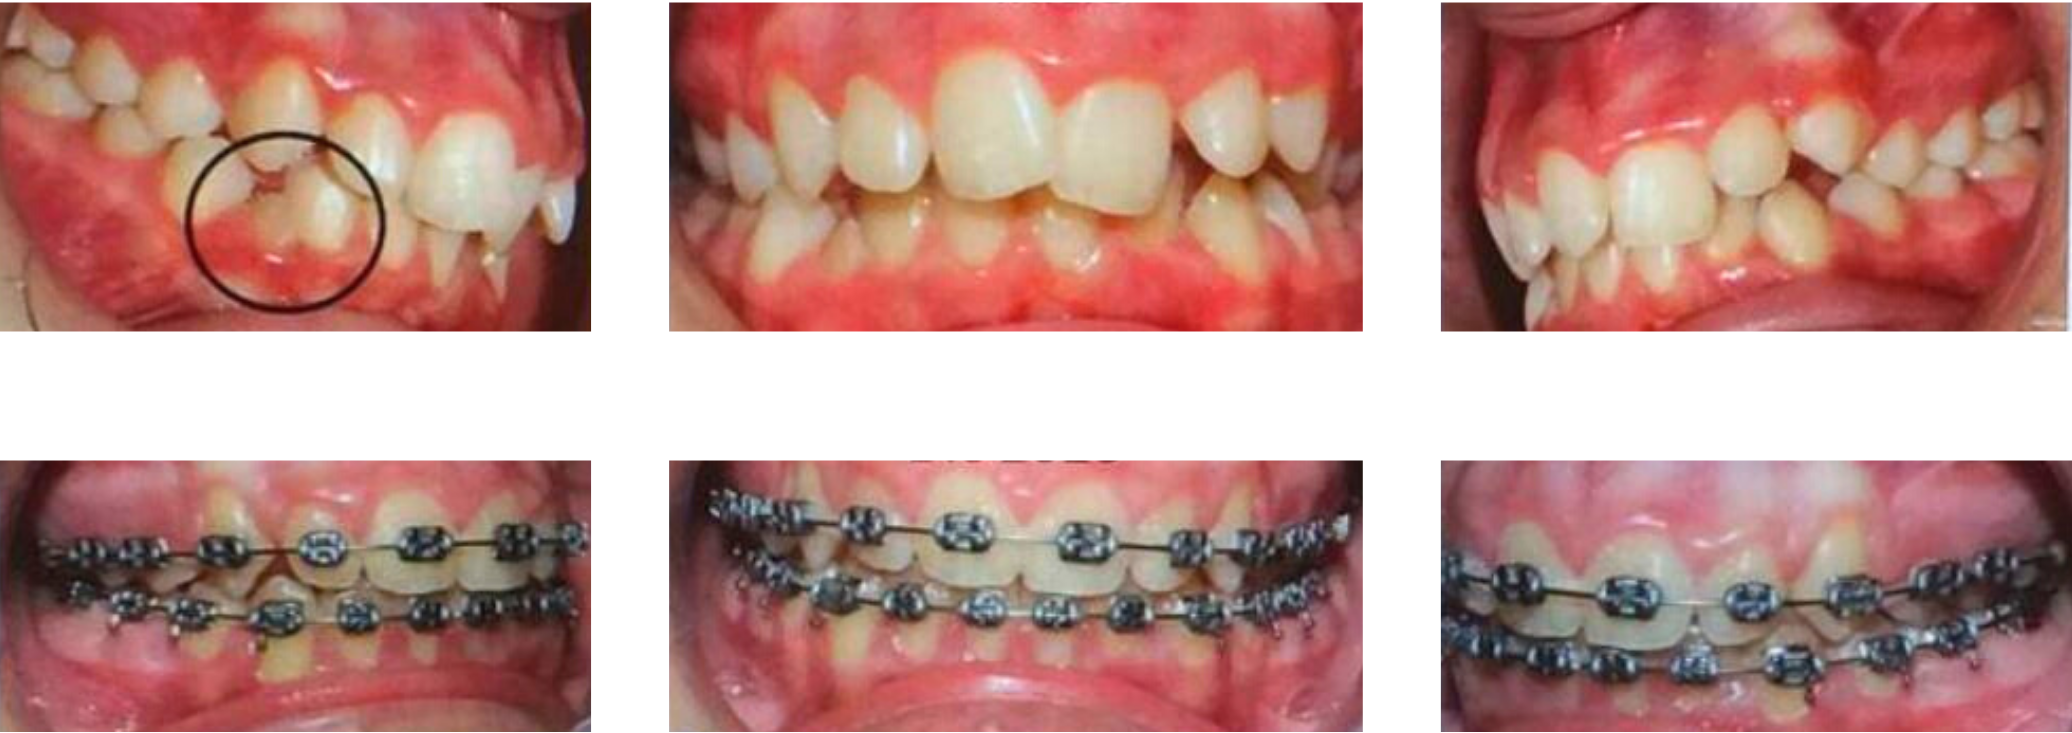 Evolución tratamiento ortodoncia en adolescente